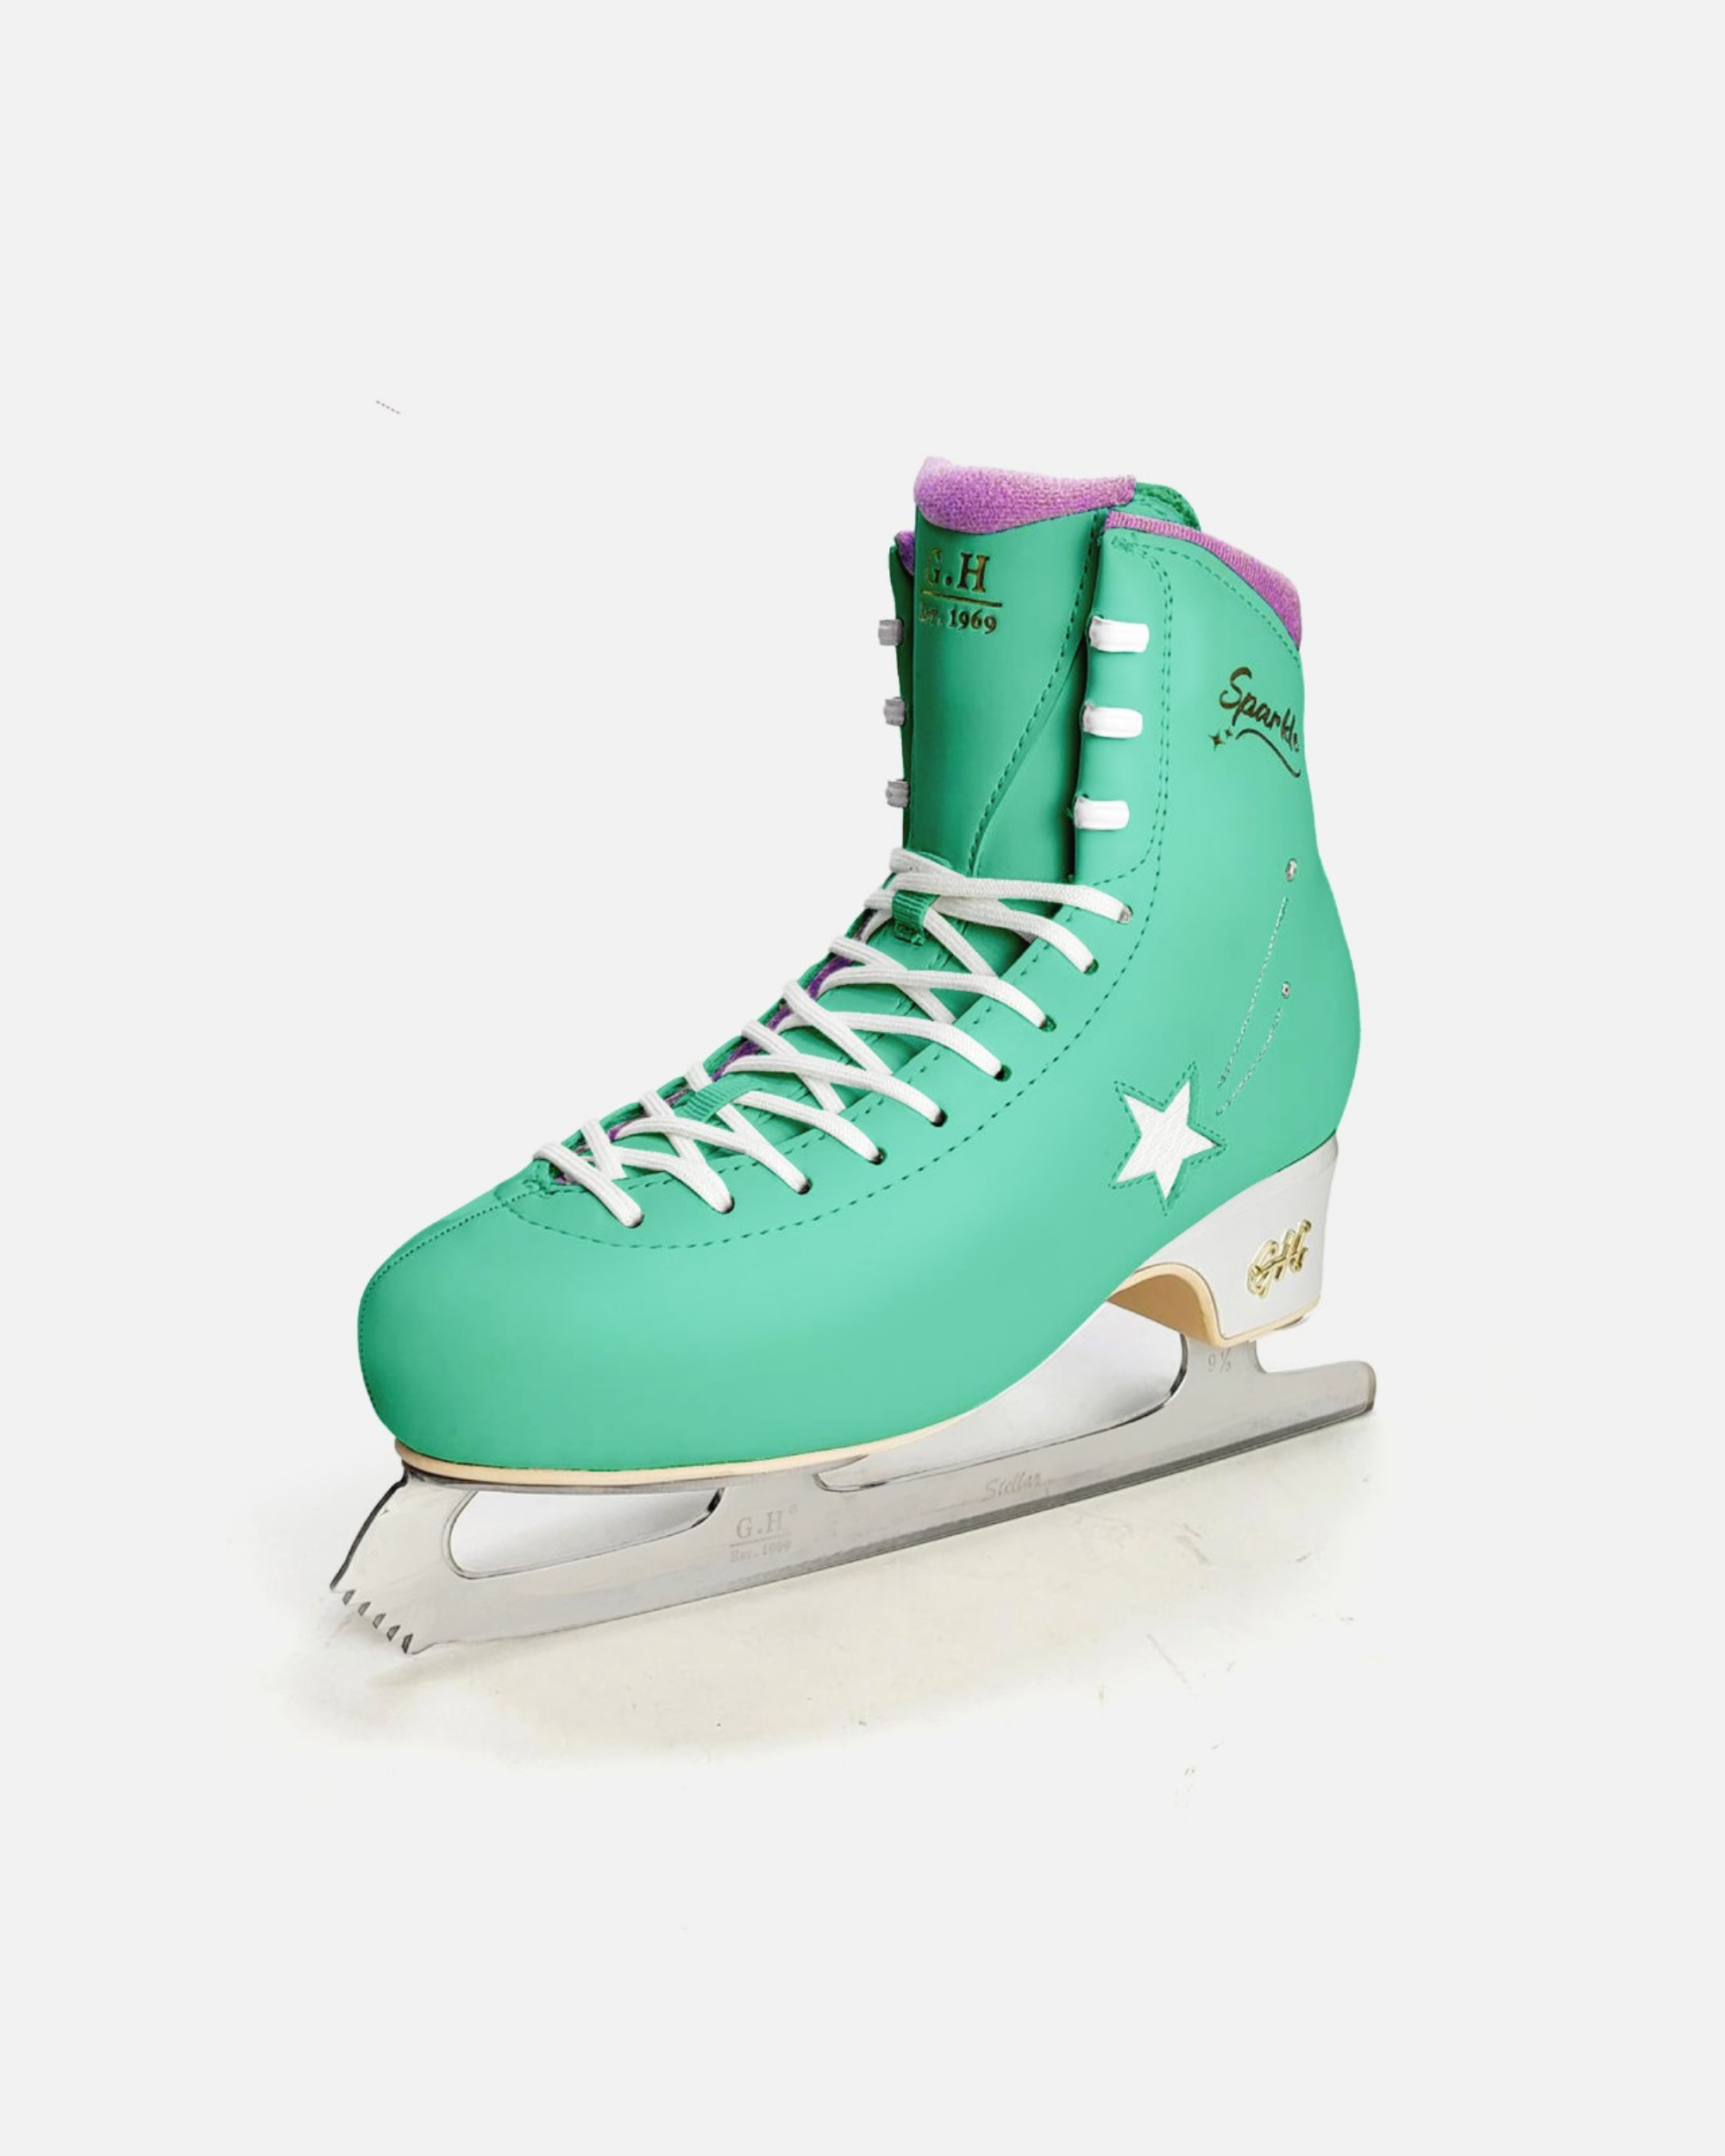 Sparkle Figure Skates (with Stellar Blades)